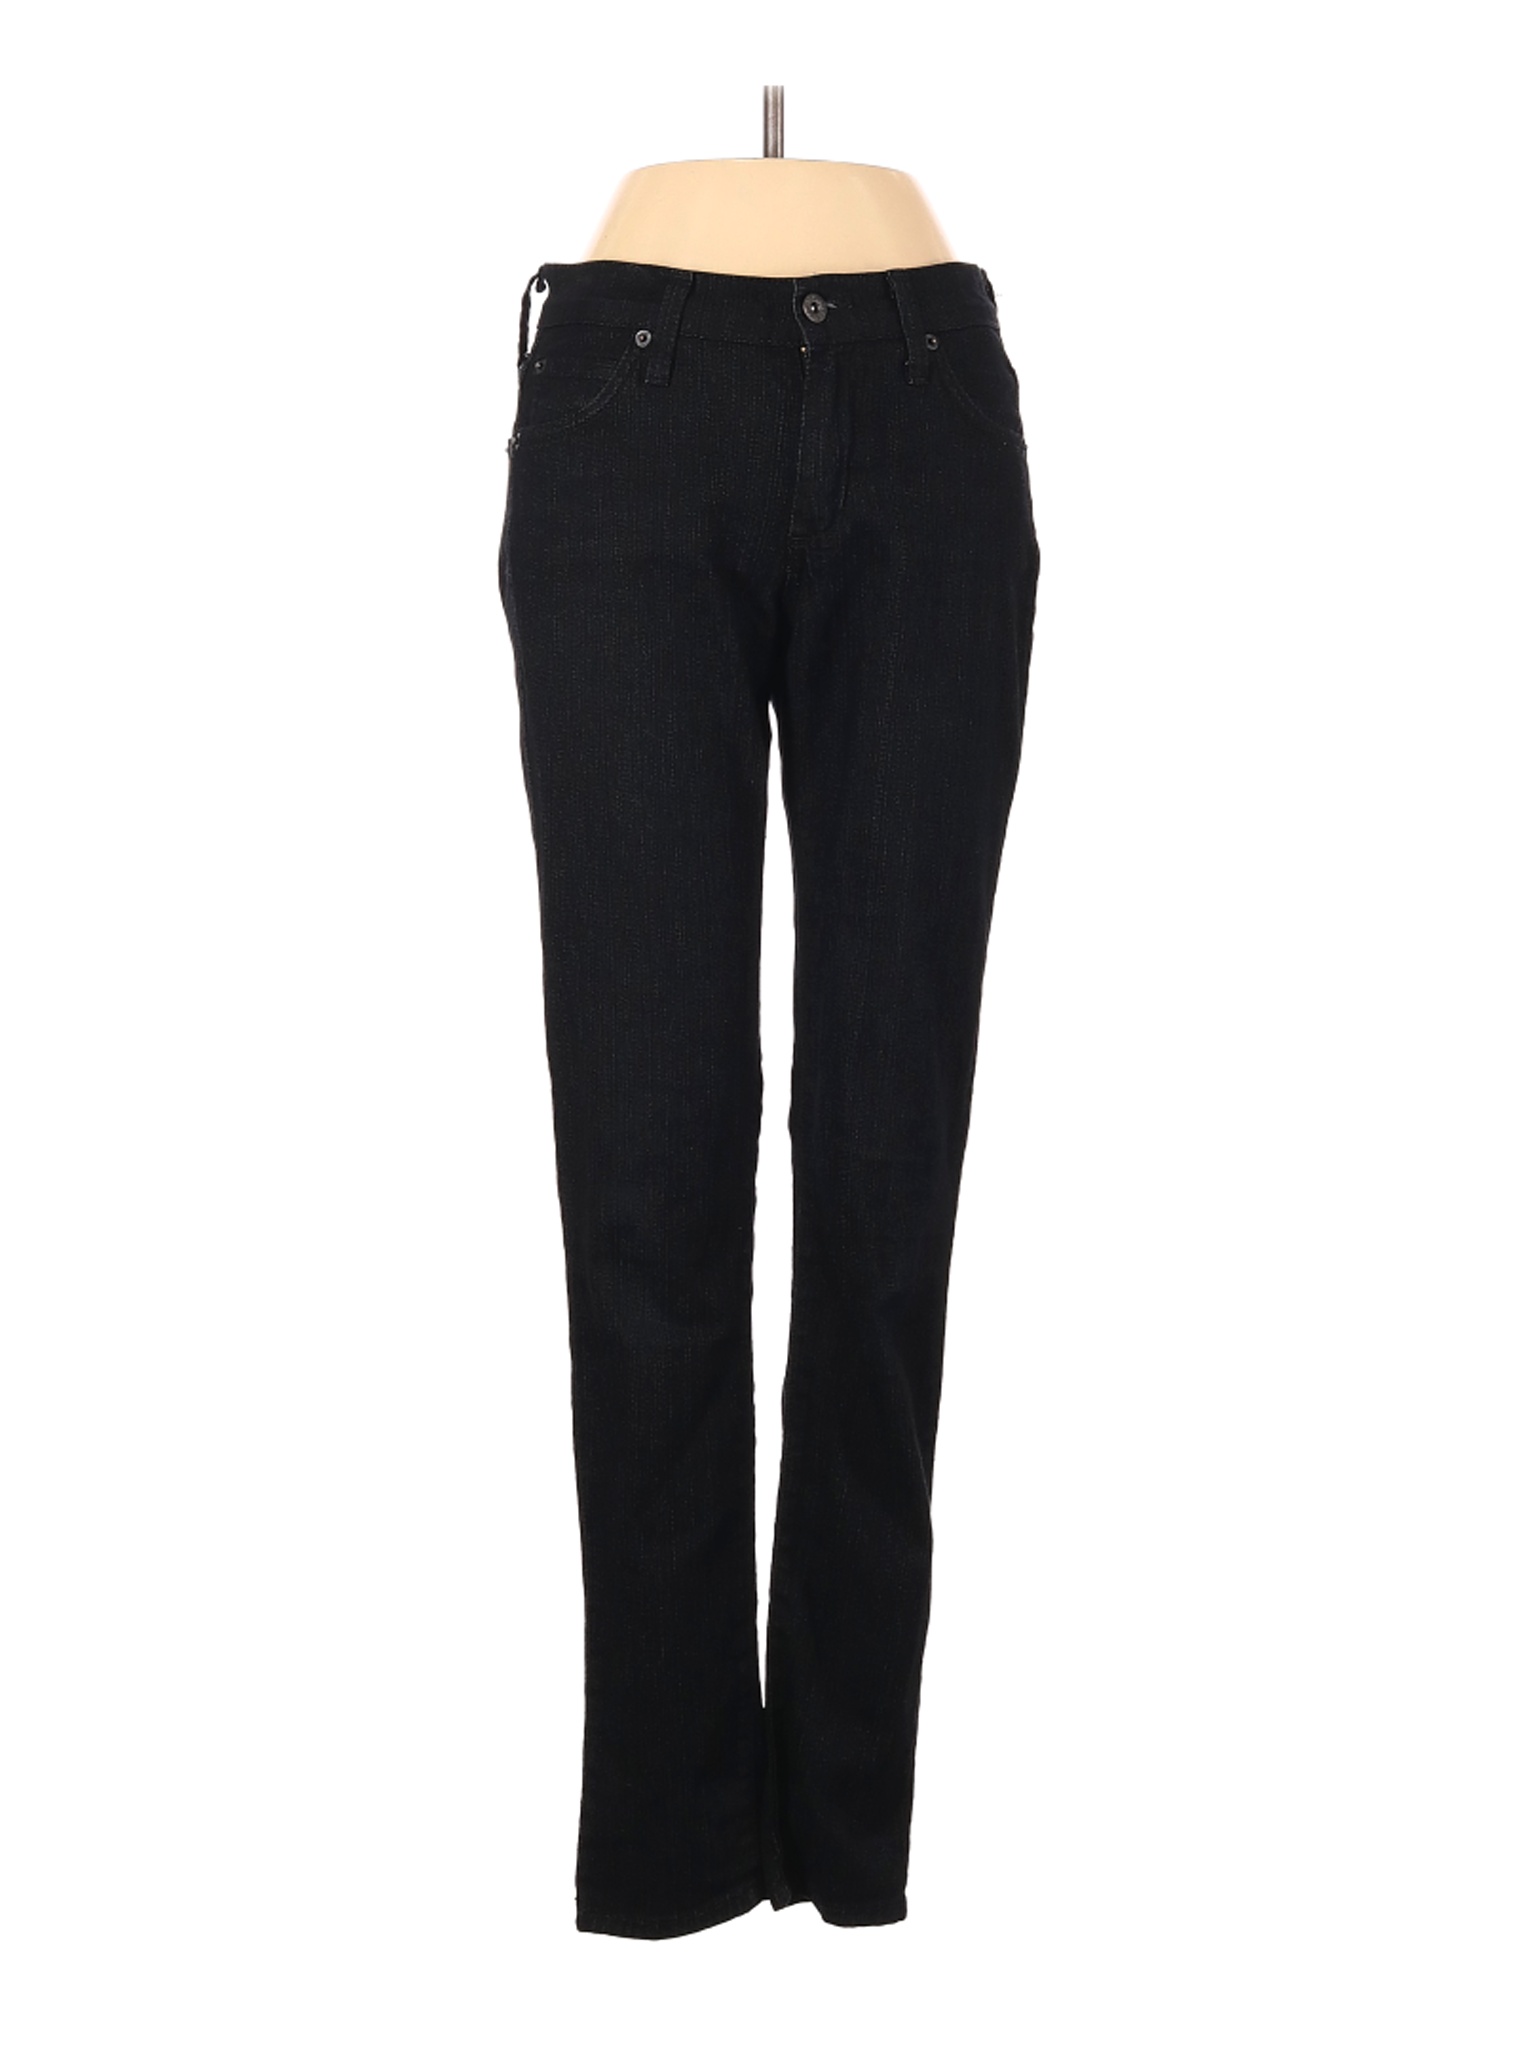 James Jeans Women Black Jeans 25W | eBay